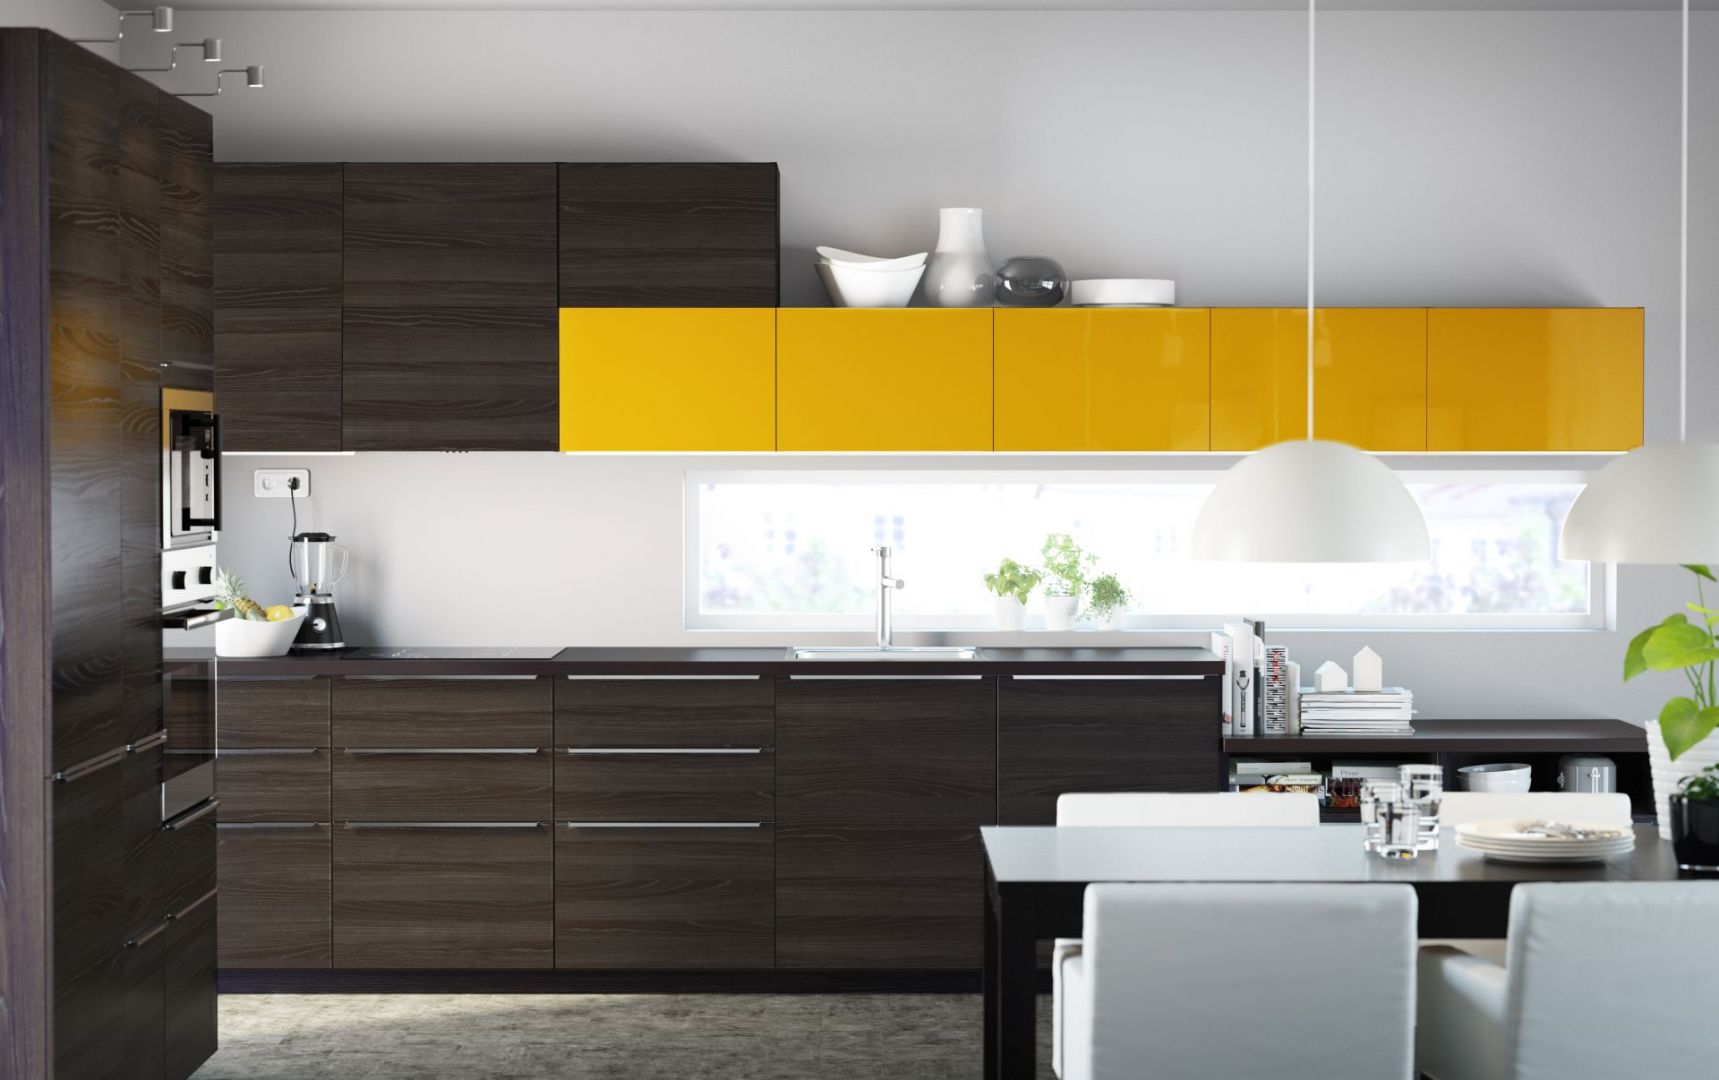 Zabudowa kuchenna choć w ciemnych barwach czekoladowego drewna, jest również bardzo energetyczna. Wszystko za sprawą przełamania brązu soczystym żółtym kolorem. Fot. IKEA